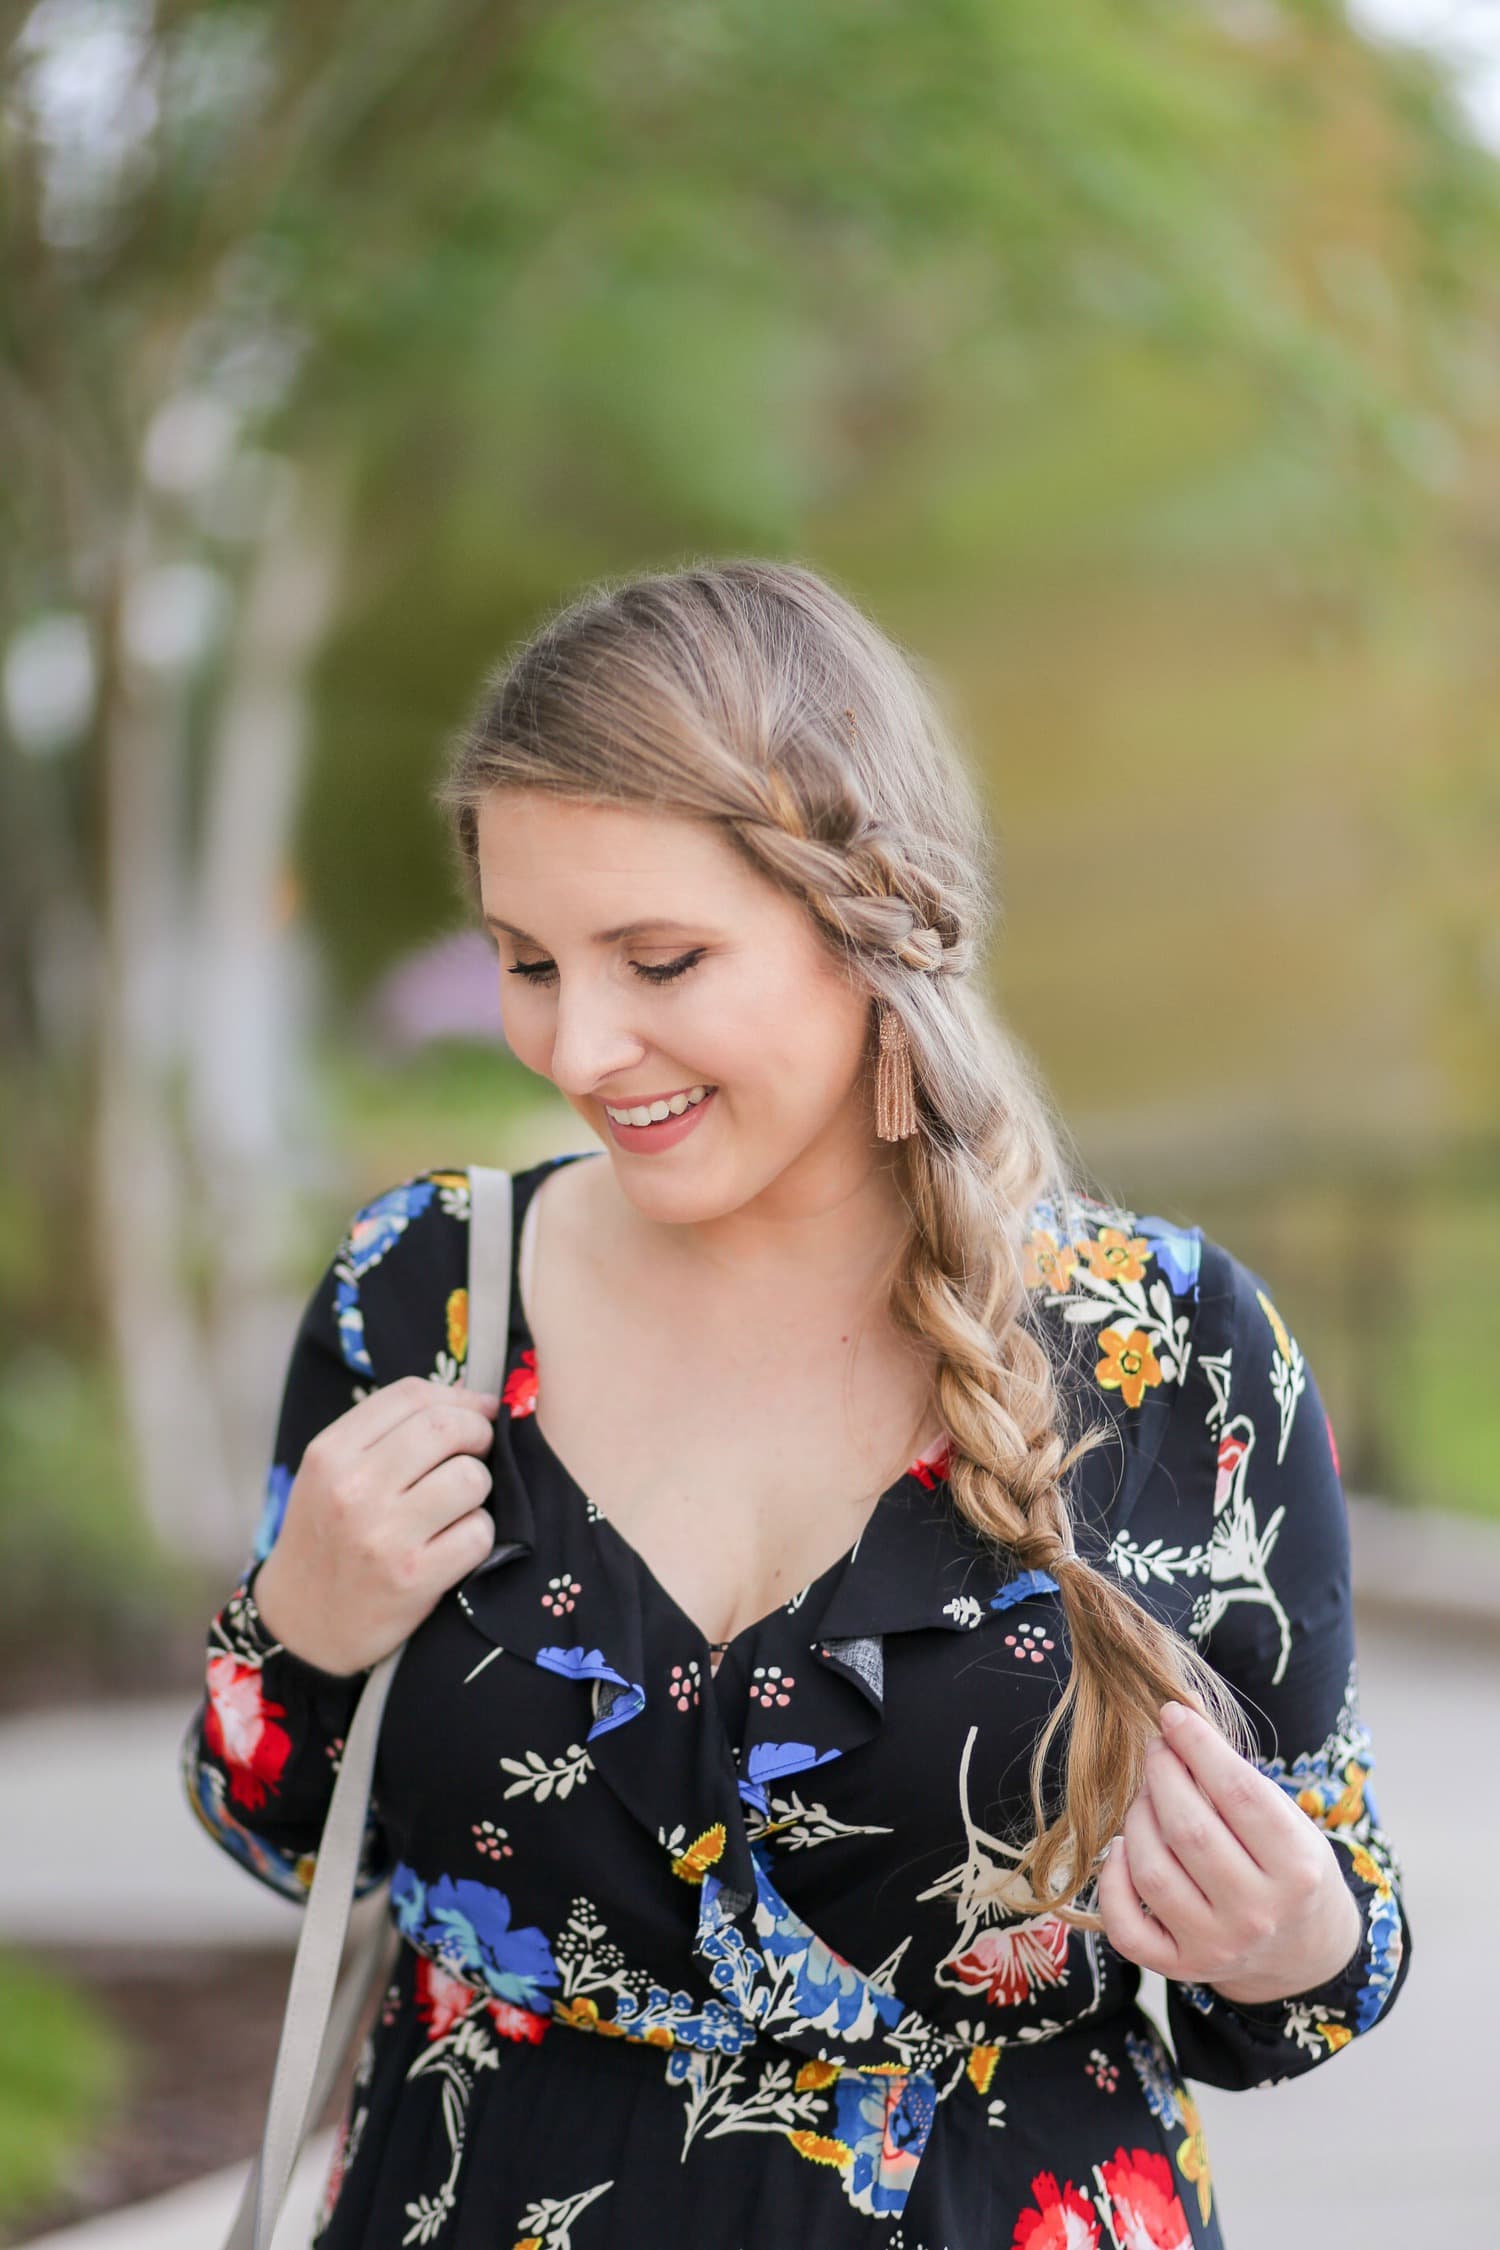 easy side braid tutorial blonde hair cute braid braid inspiration | Ashley Brooke Nicholas beauty blogger